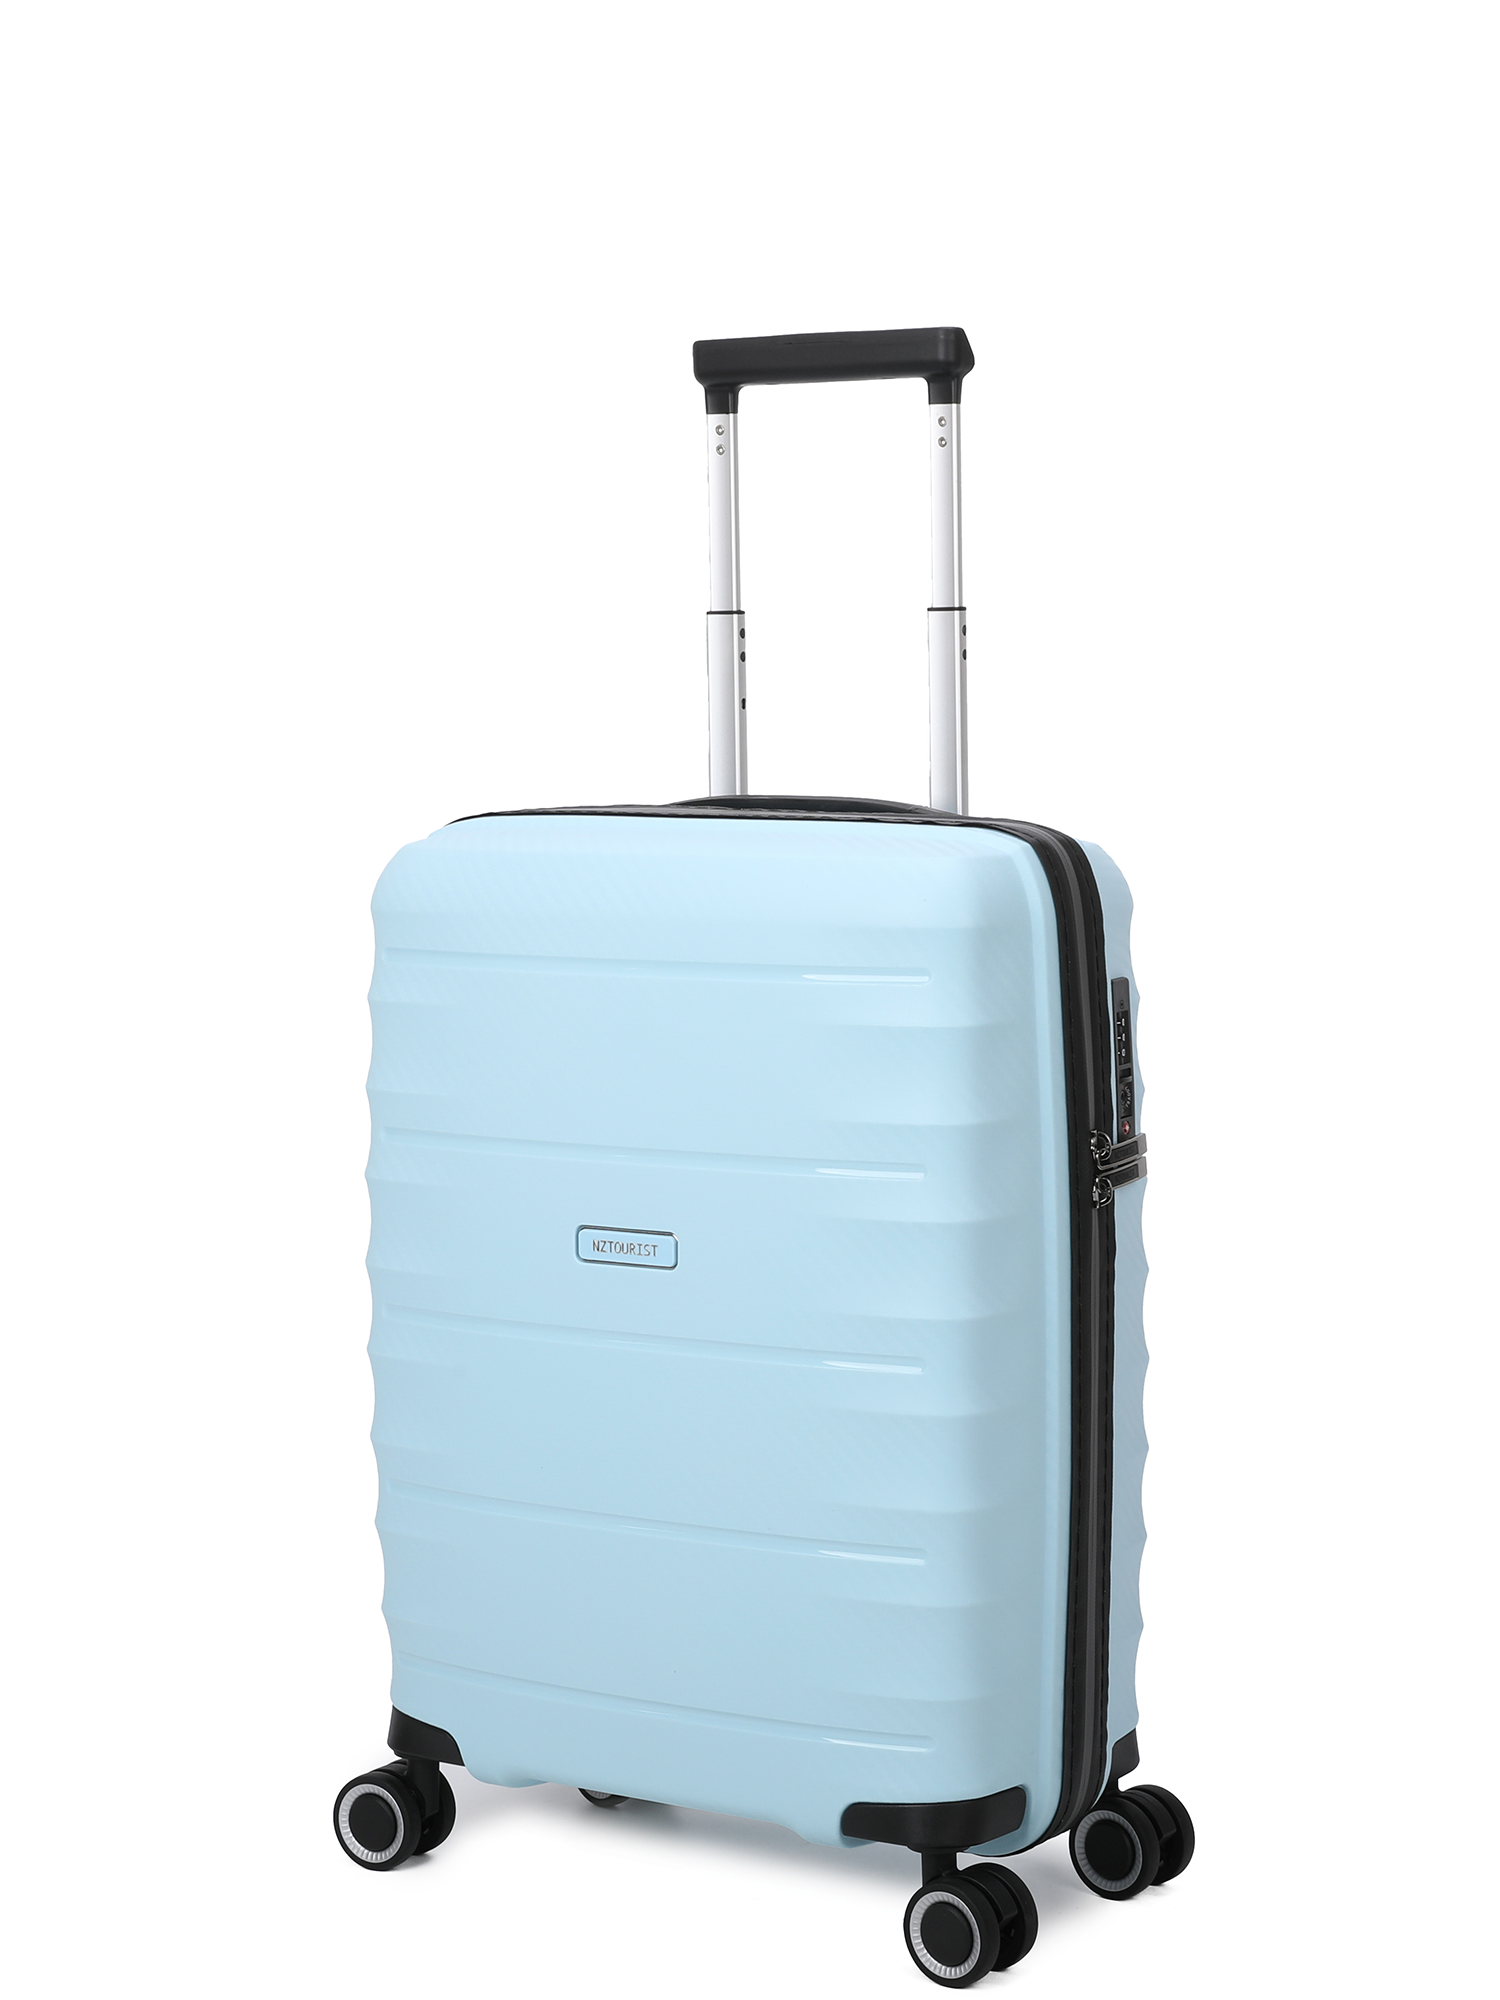 NZTourist Pro Traveller 55cm Suitcase - Blue